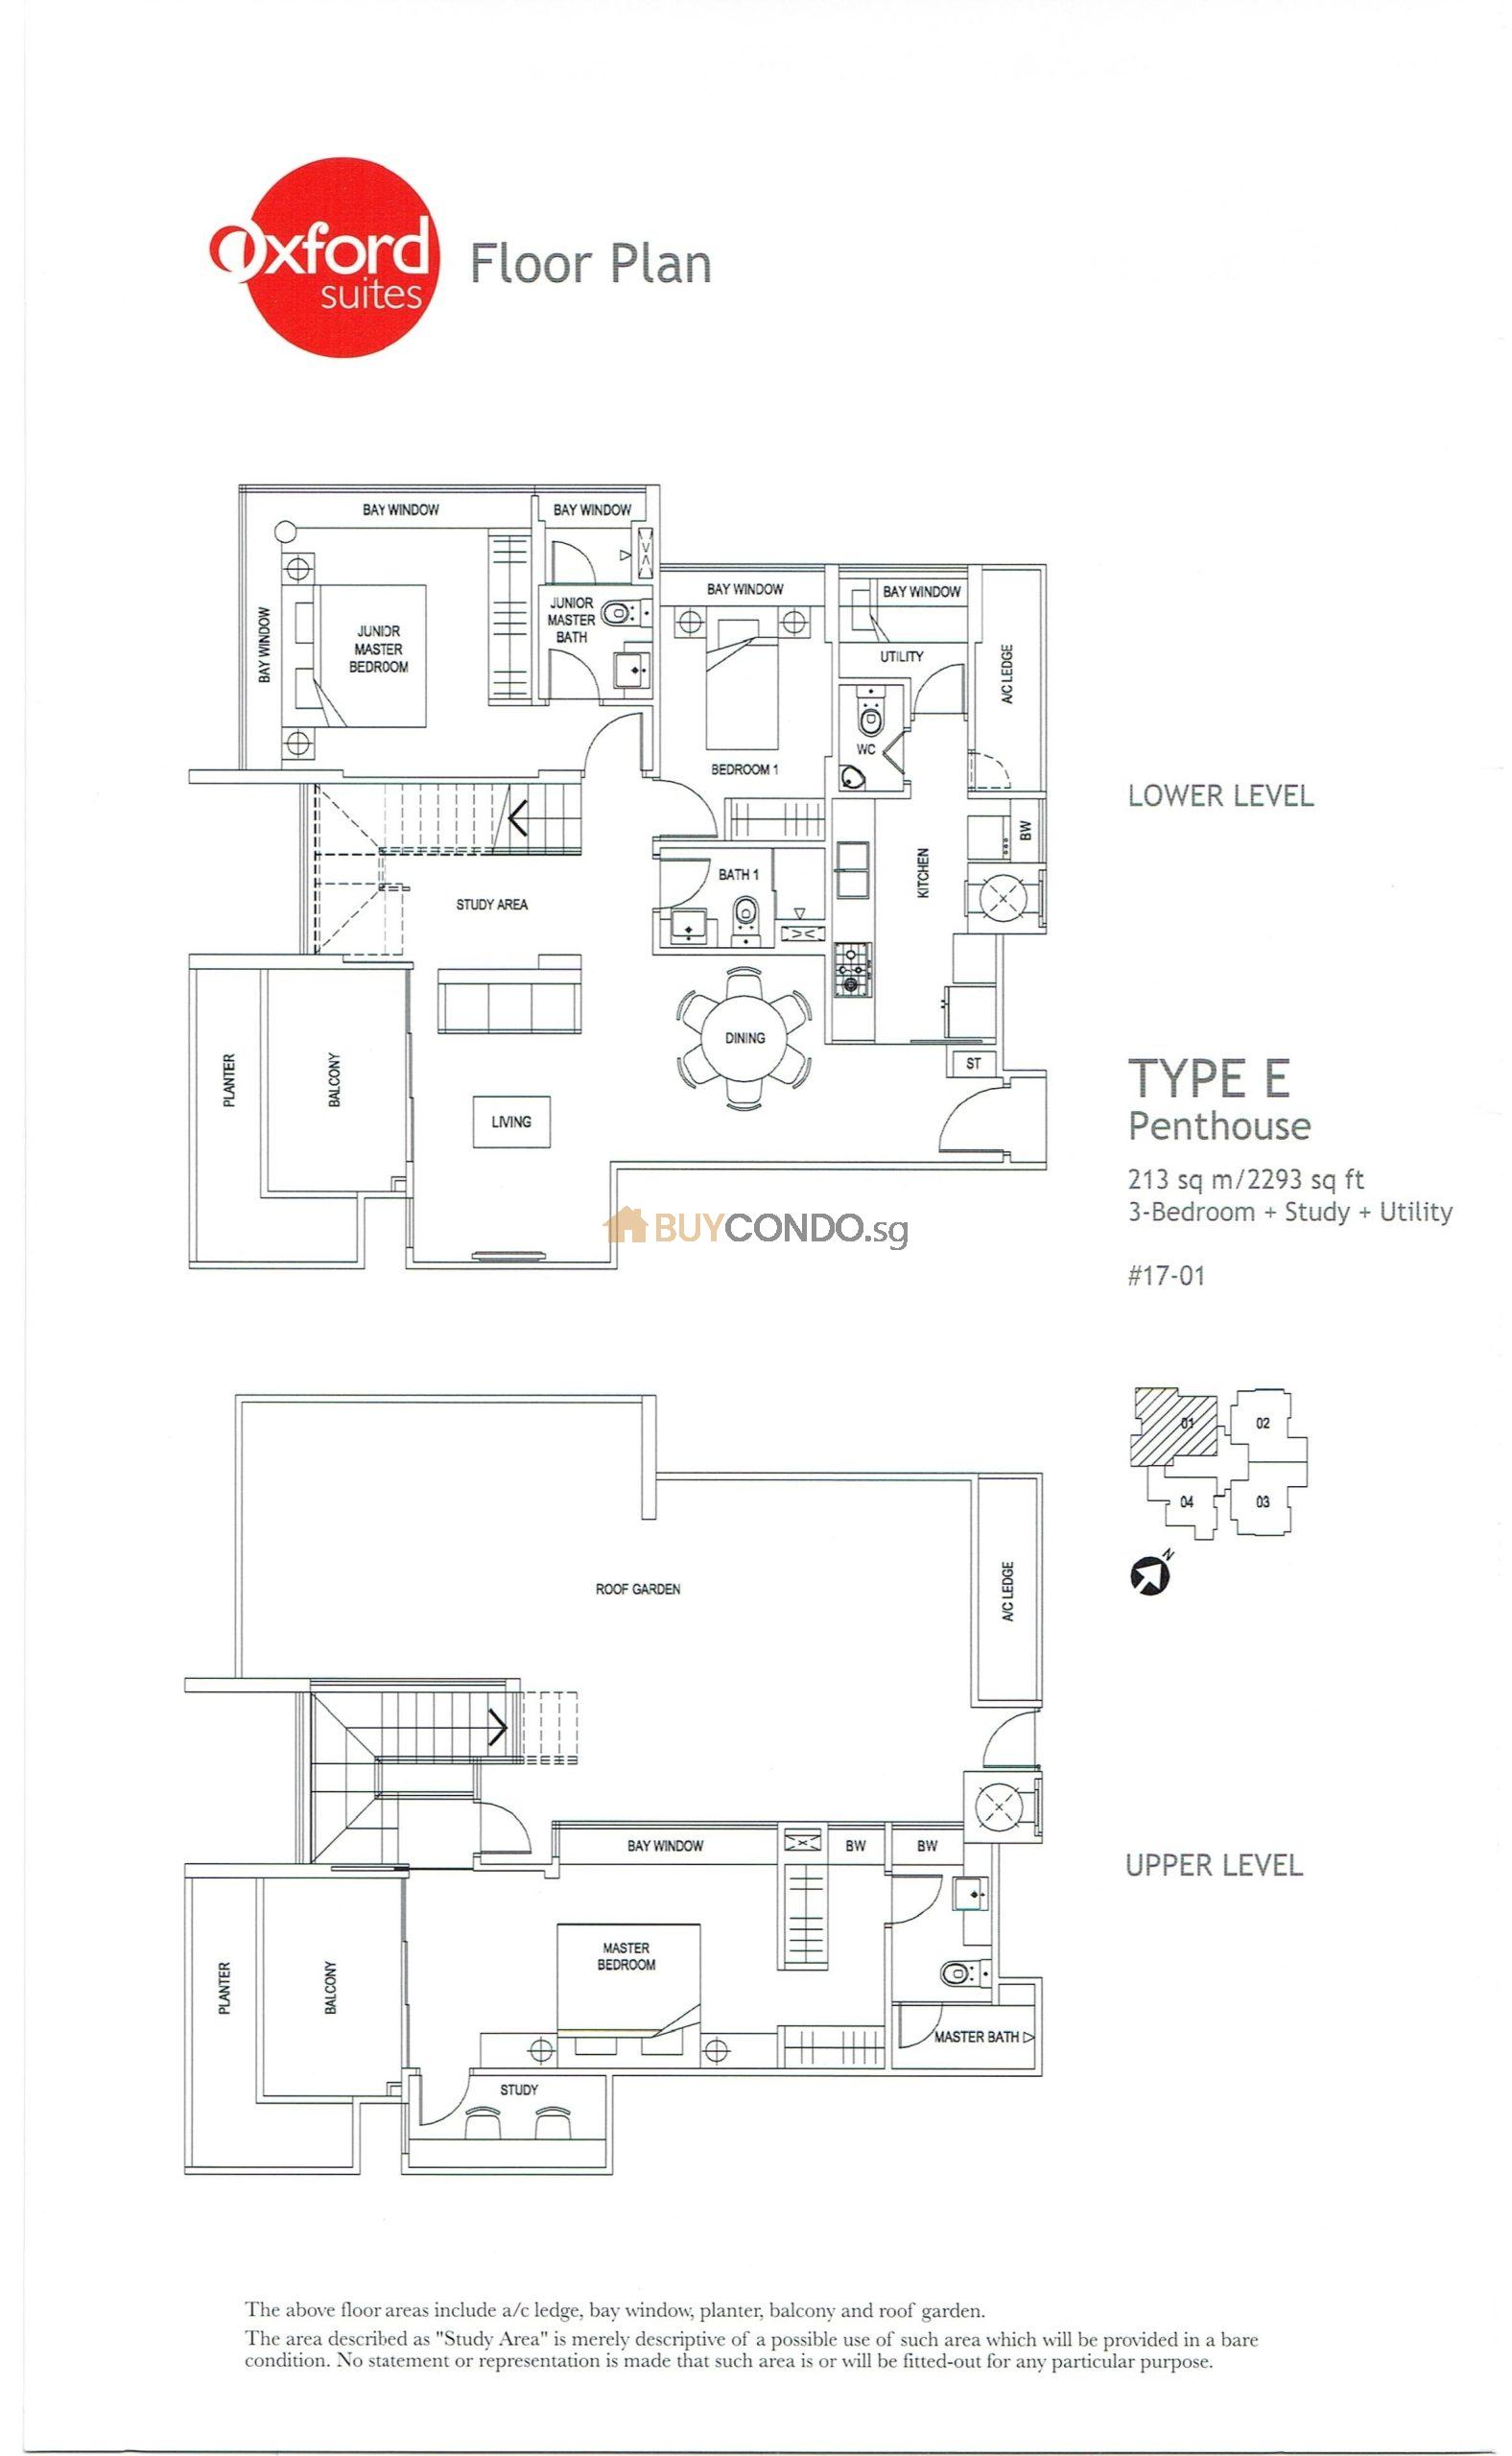 Oxford Suites Condominium